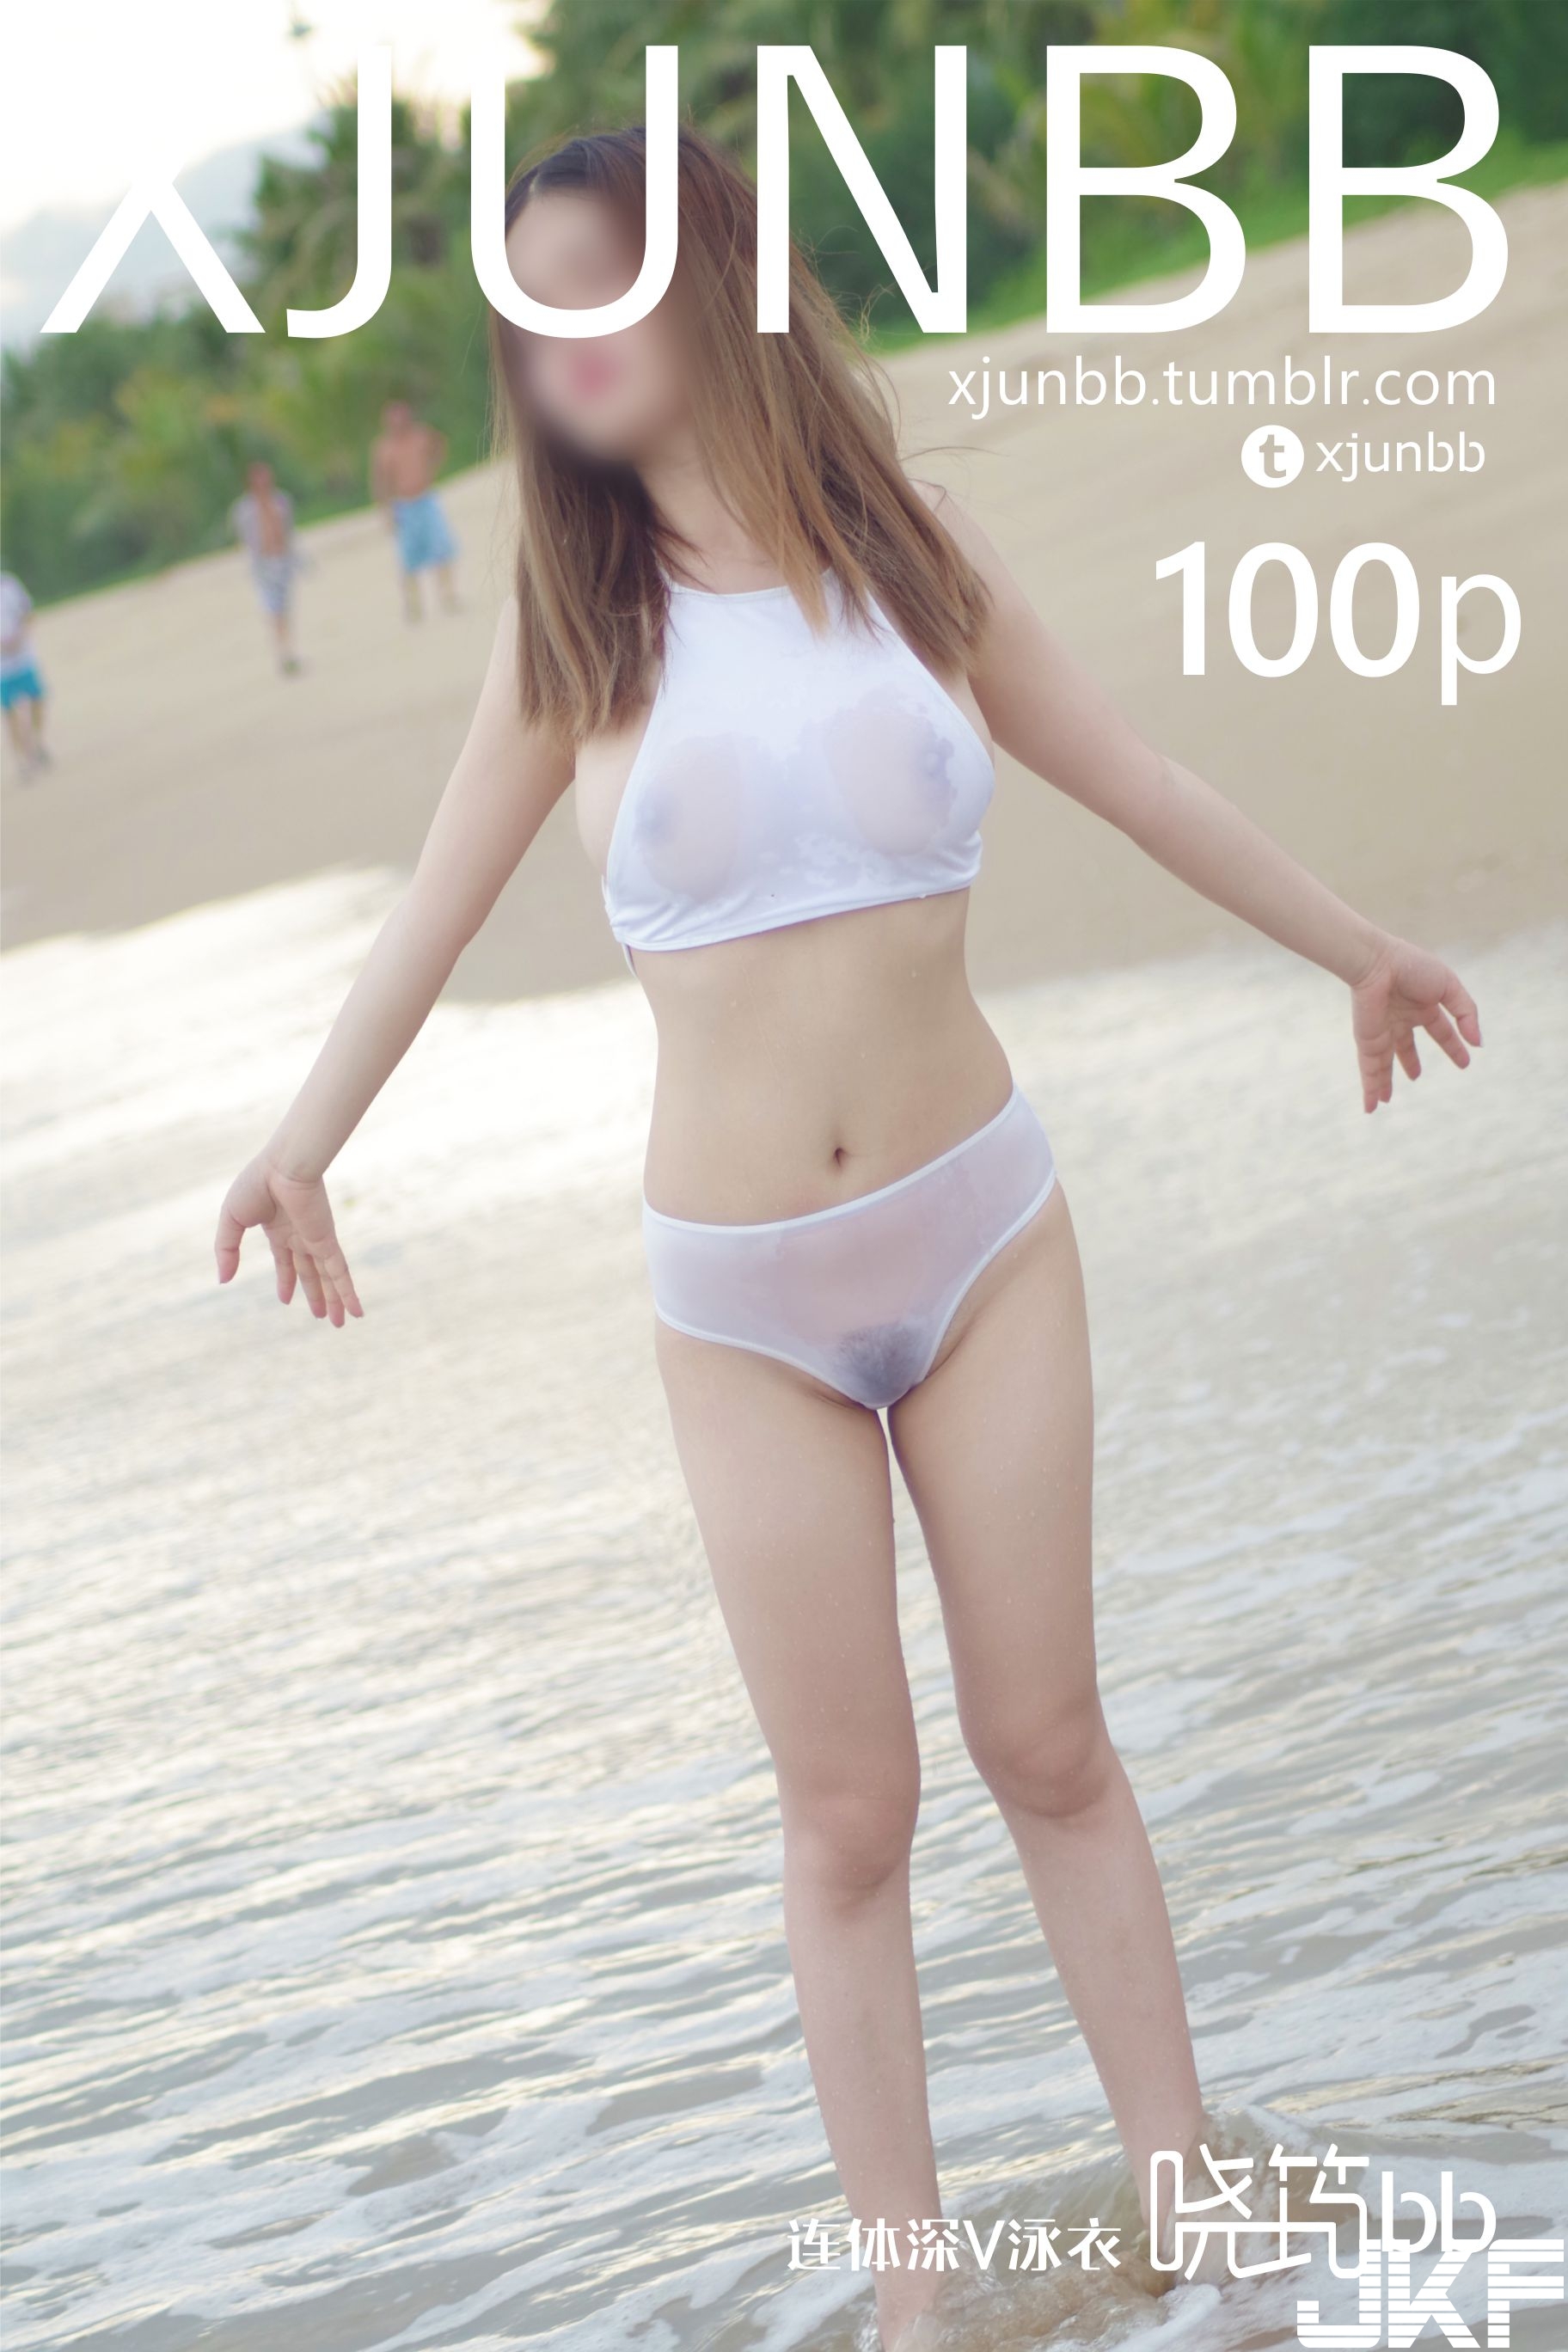 湯不熱Tumblr私人攝影師xjunbb曉筠 -白薄泳衣 [100+1P 147MB] - 貼圖 - 絲襪美腿 -